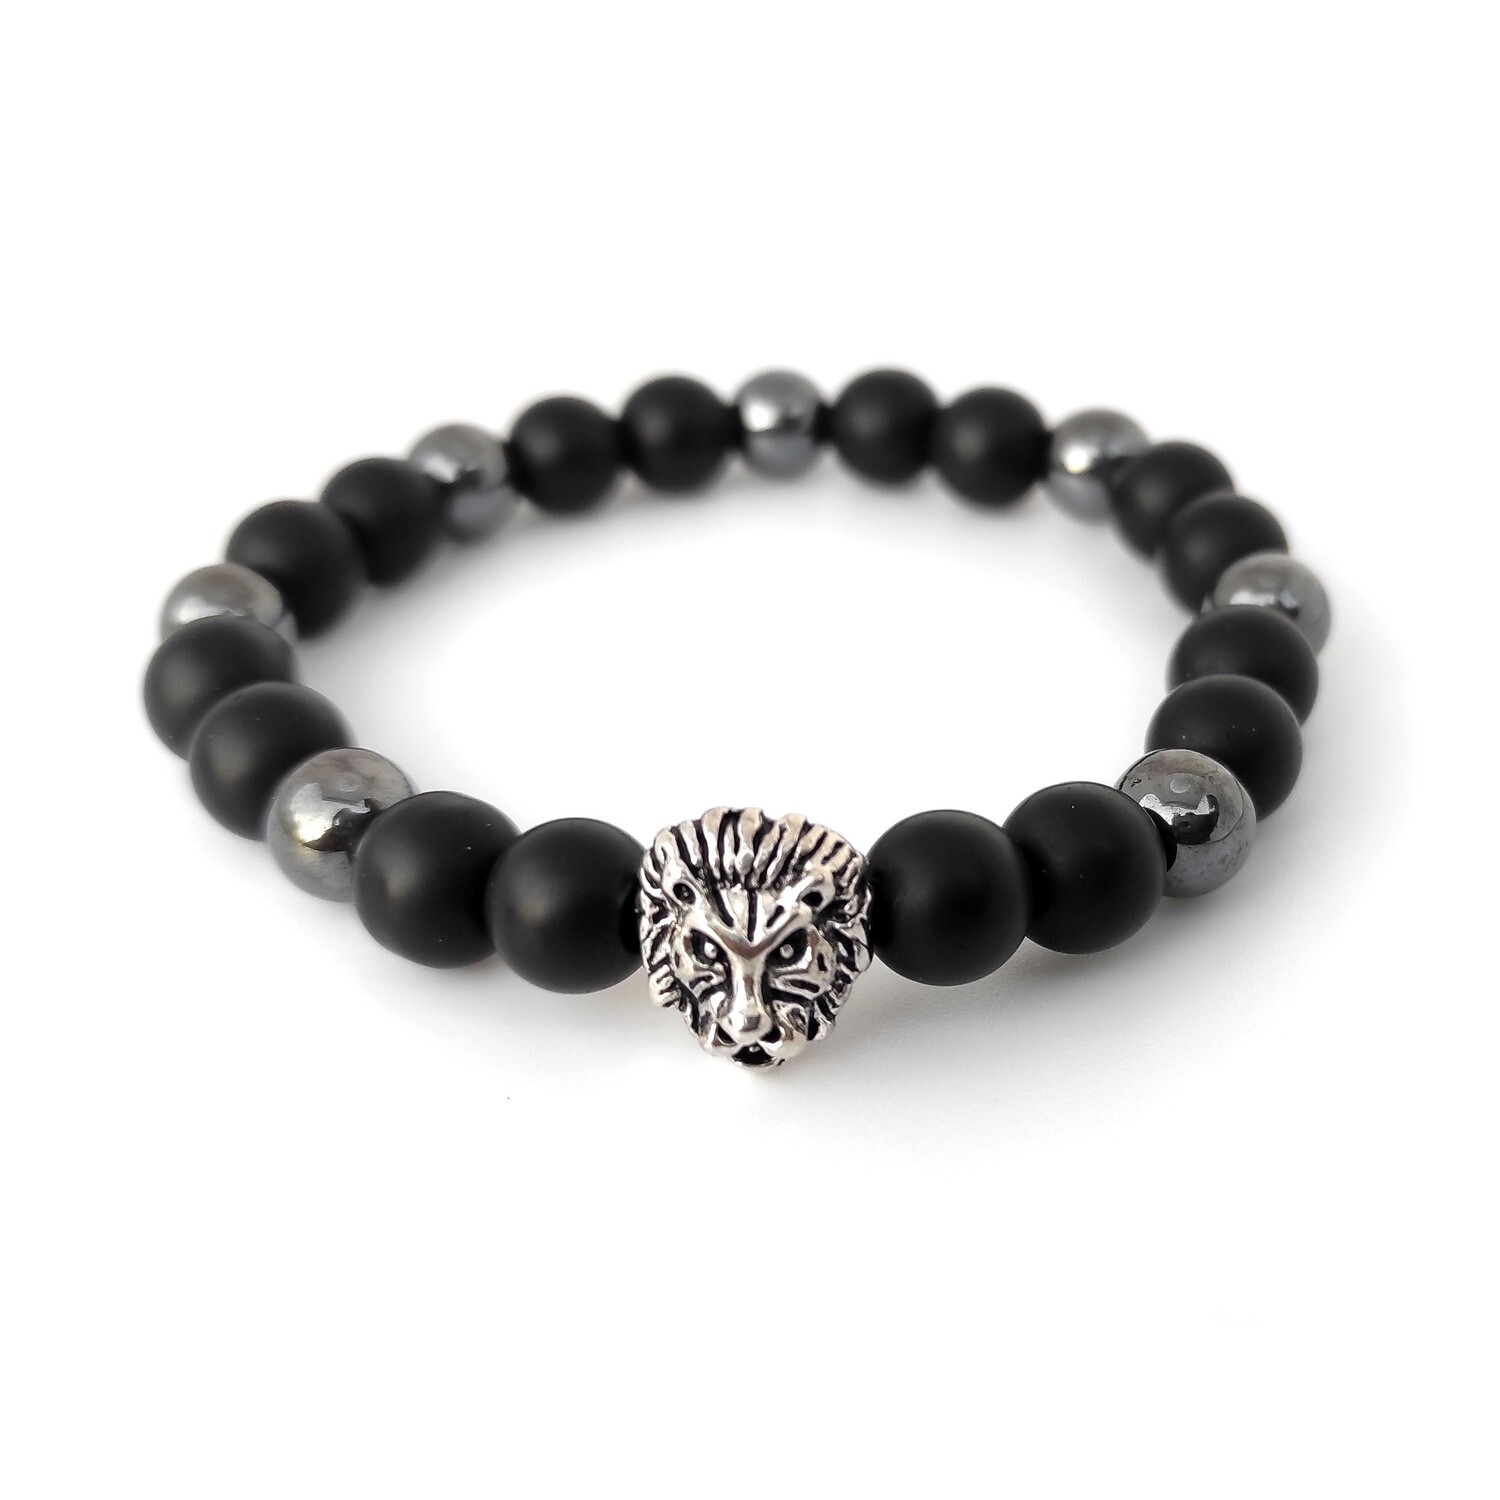 Black Onyx gemstone with lion bracelet